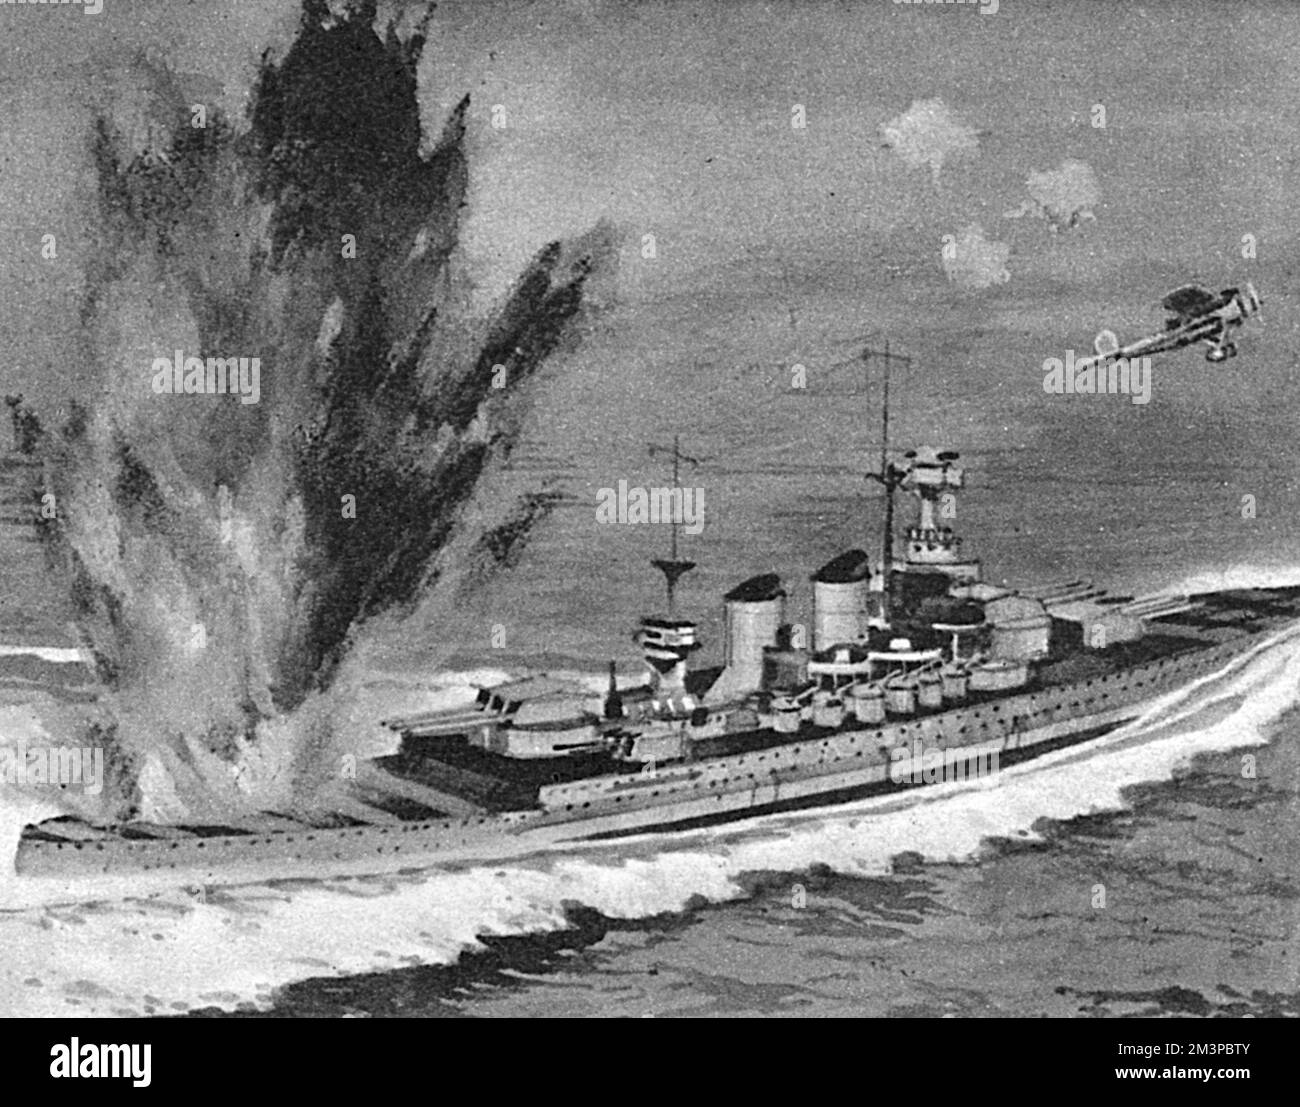 A 11,30am h 30, le navire de guerre italien, Vittorio Veneto, est attaqué par des bombardiers britanniques Fairey Albacore, lancés à partir du porte-avions H.M.S. Formidable Date : 28 mars 1941 Banque D'Images